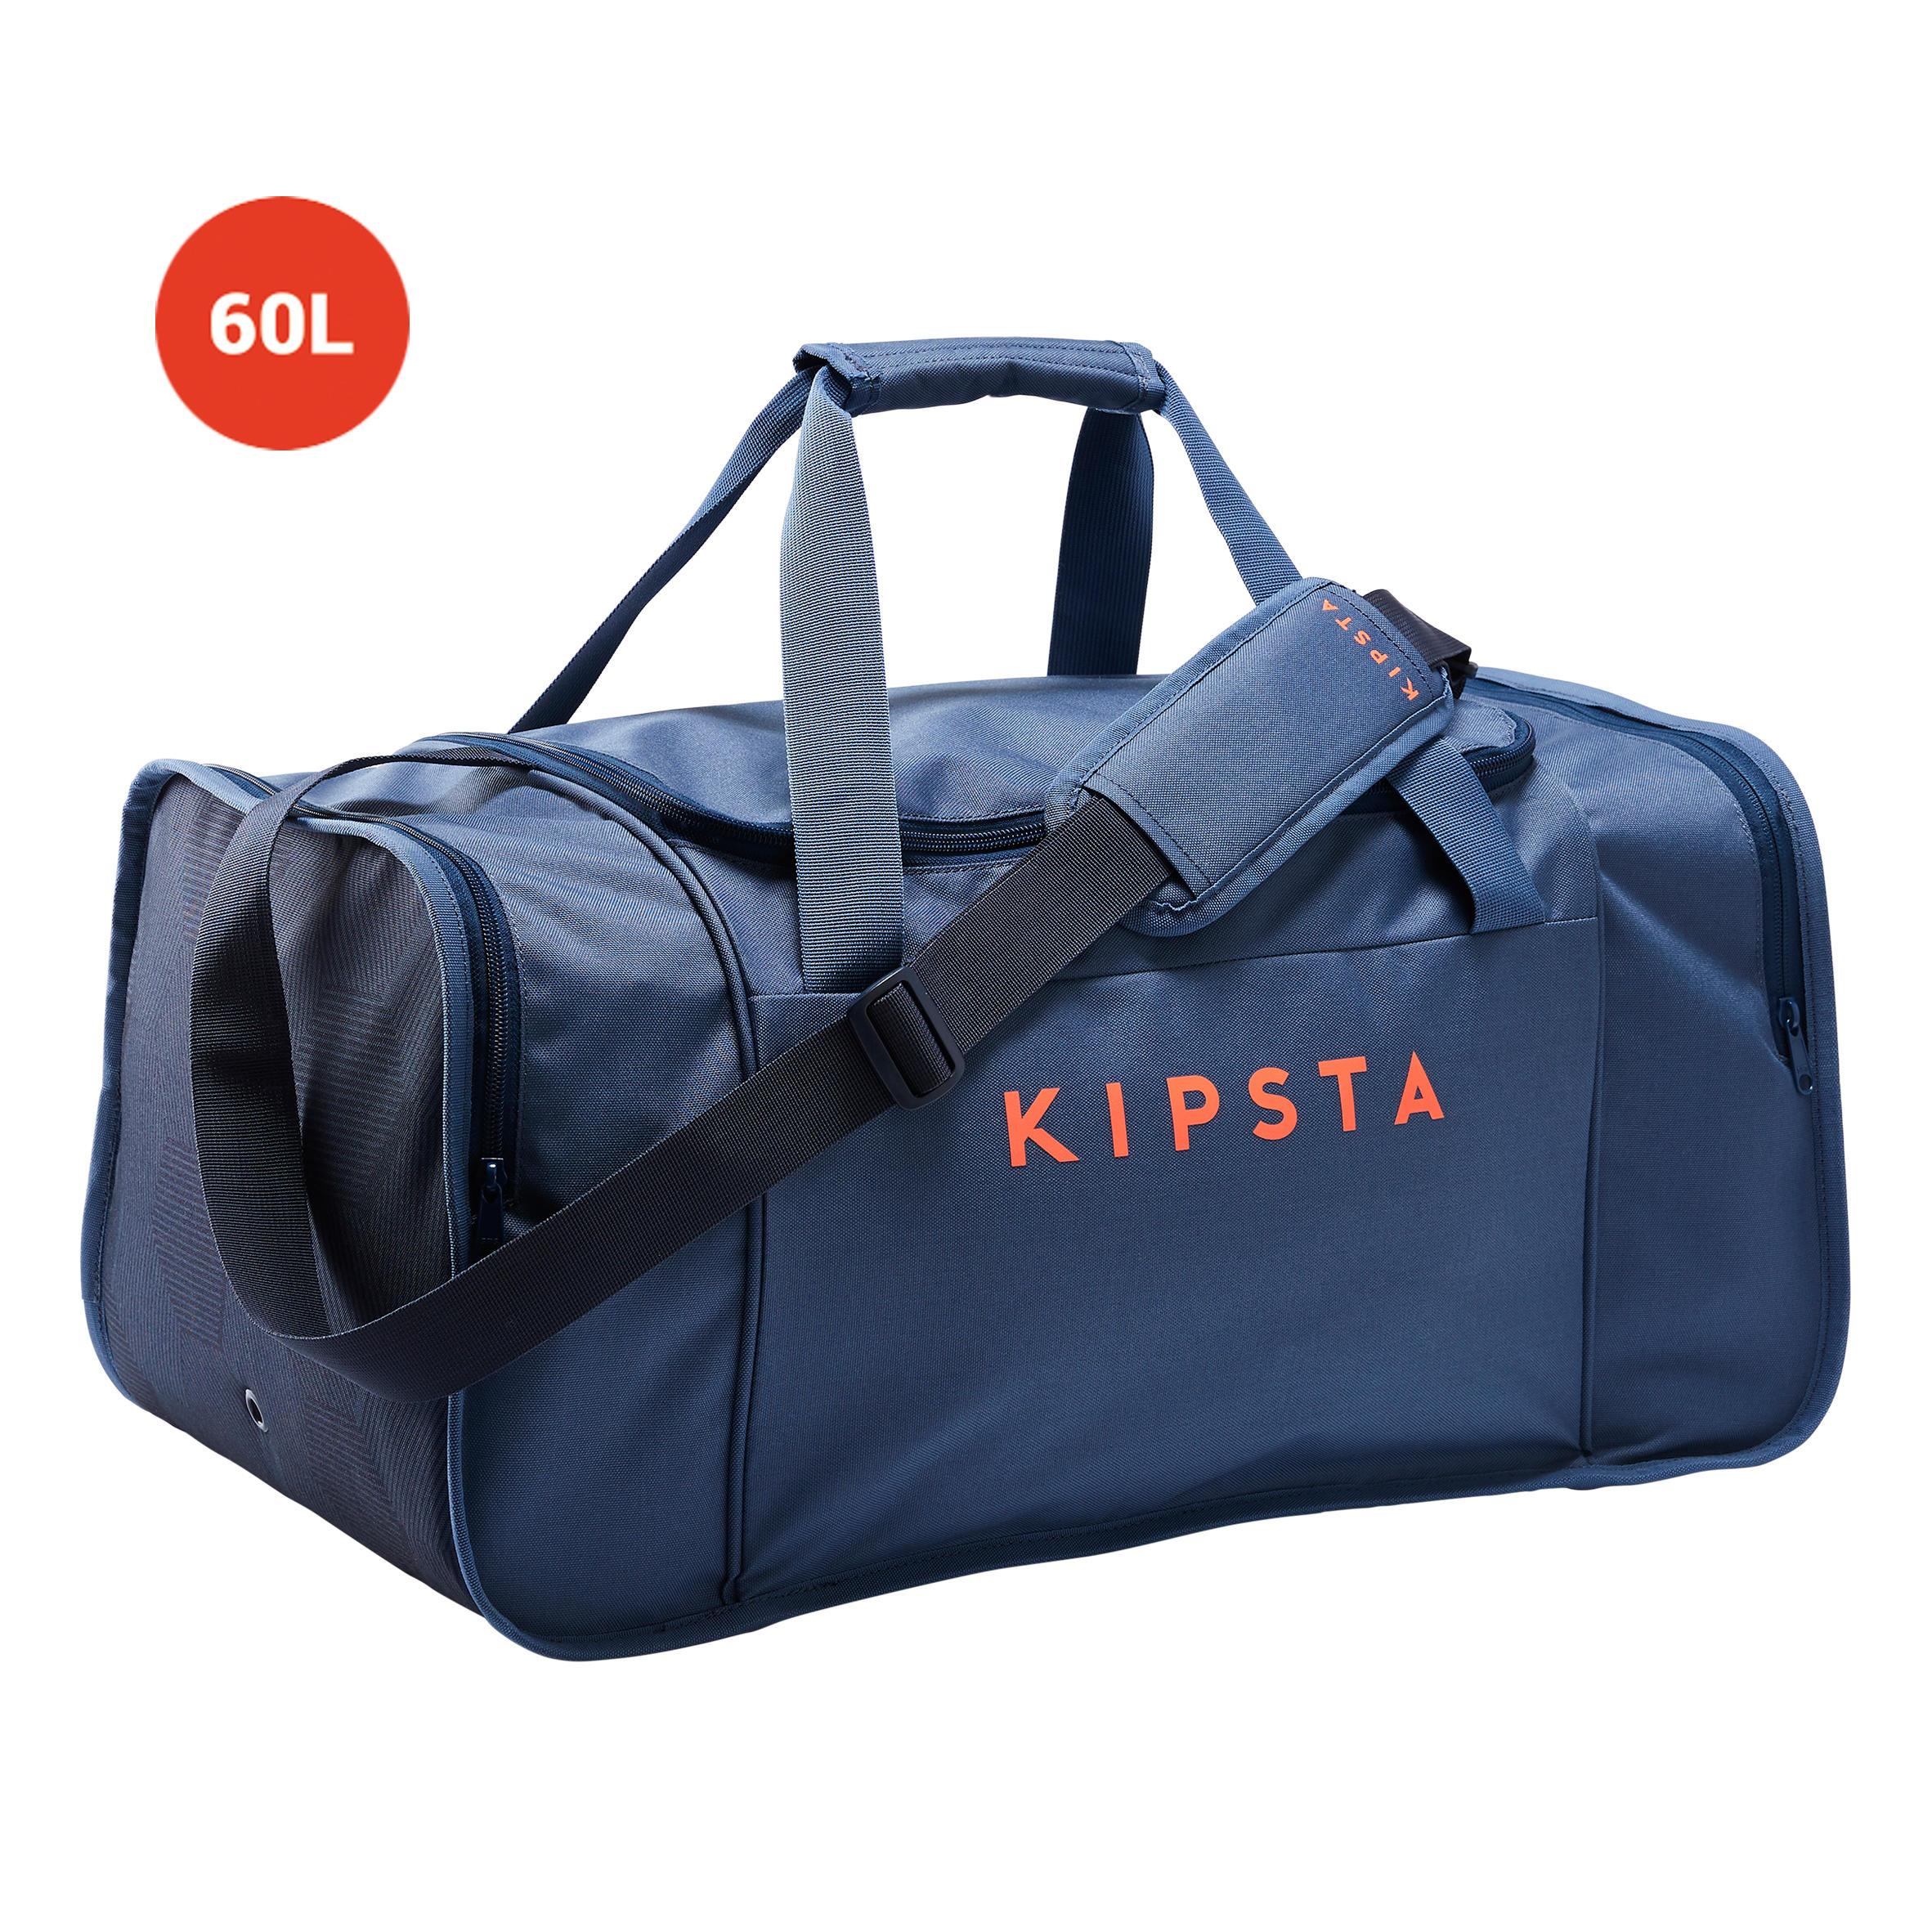 [ด่วน!! โปรโมชั่นมีจำนวนจำกัด] กระเป๋ากีฬารุ่น KIPOCKET ขนาด 60 ลิตร (สีน้ำเงิน/ส้ม) สำหรับ ฟุตบอล